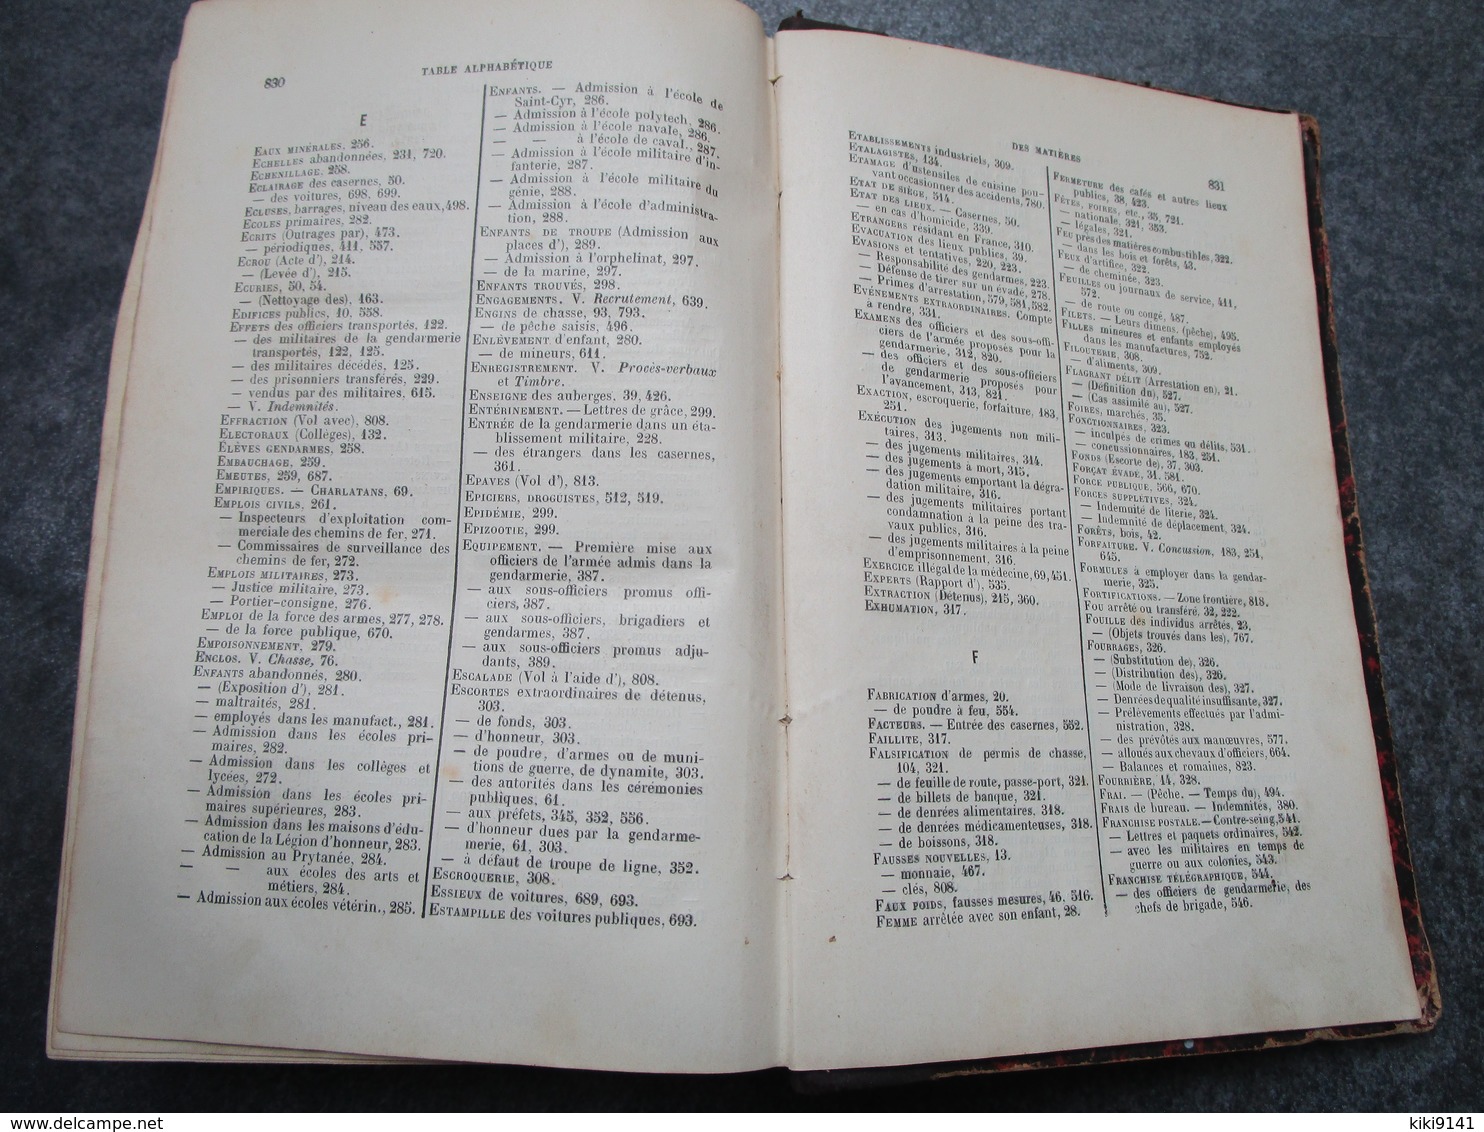 DICTIONNAIRE DE LA GENDARMERIE par M. Cochet de Savigny - 34è Edition (878 pages)